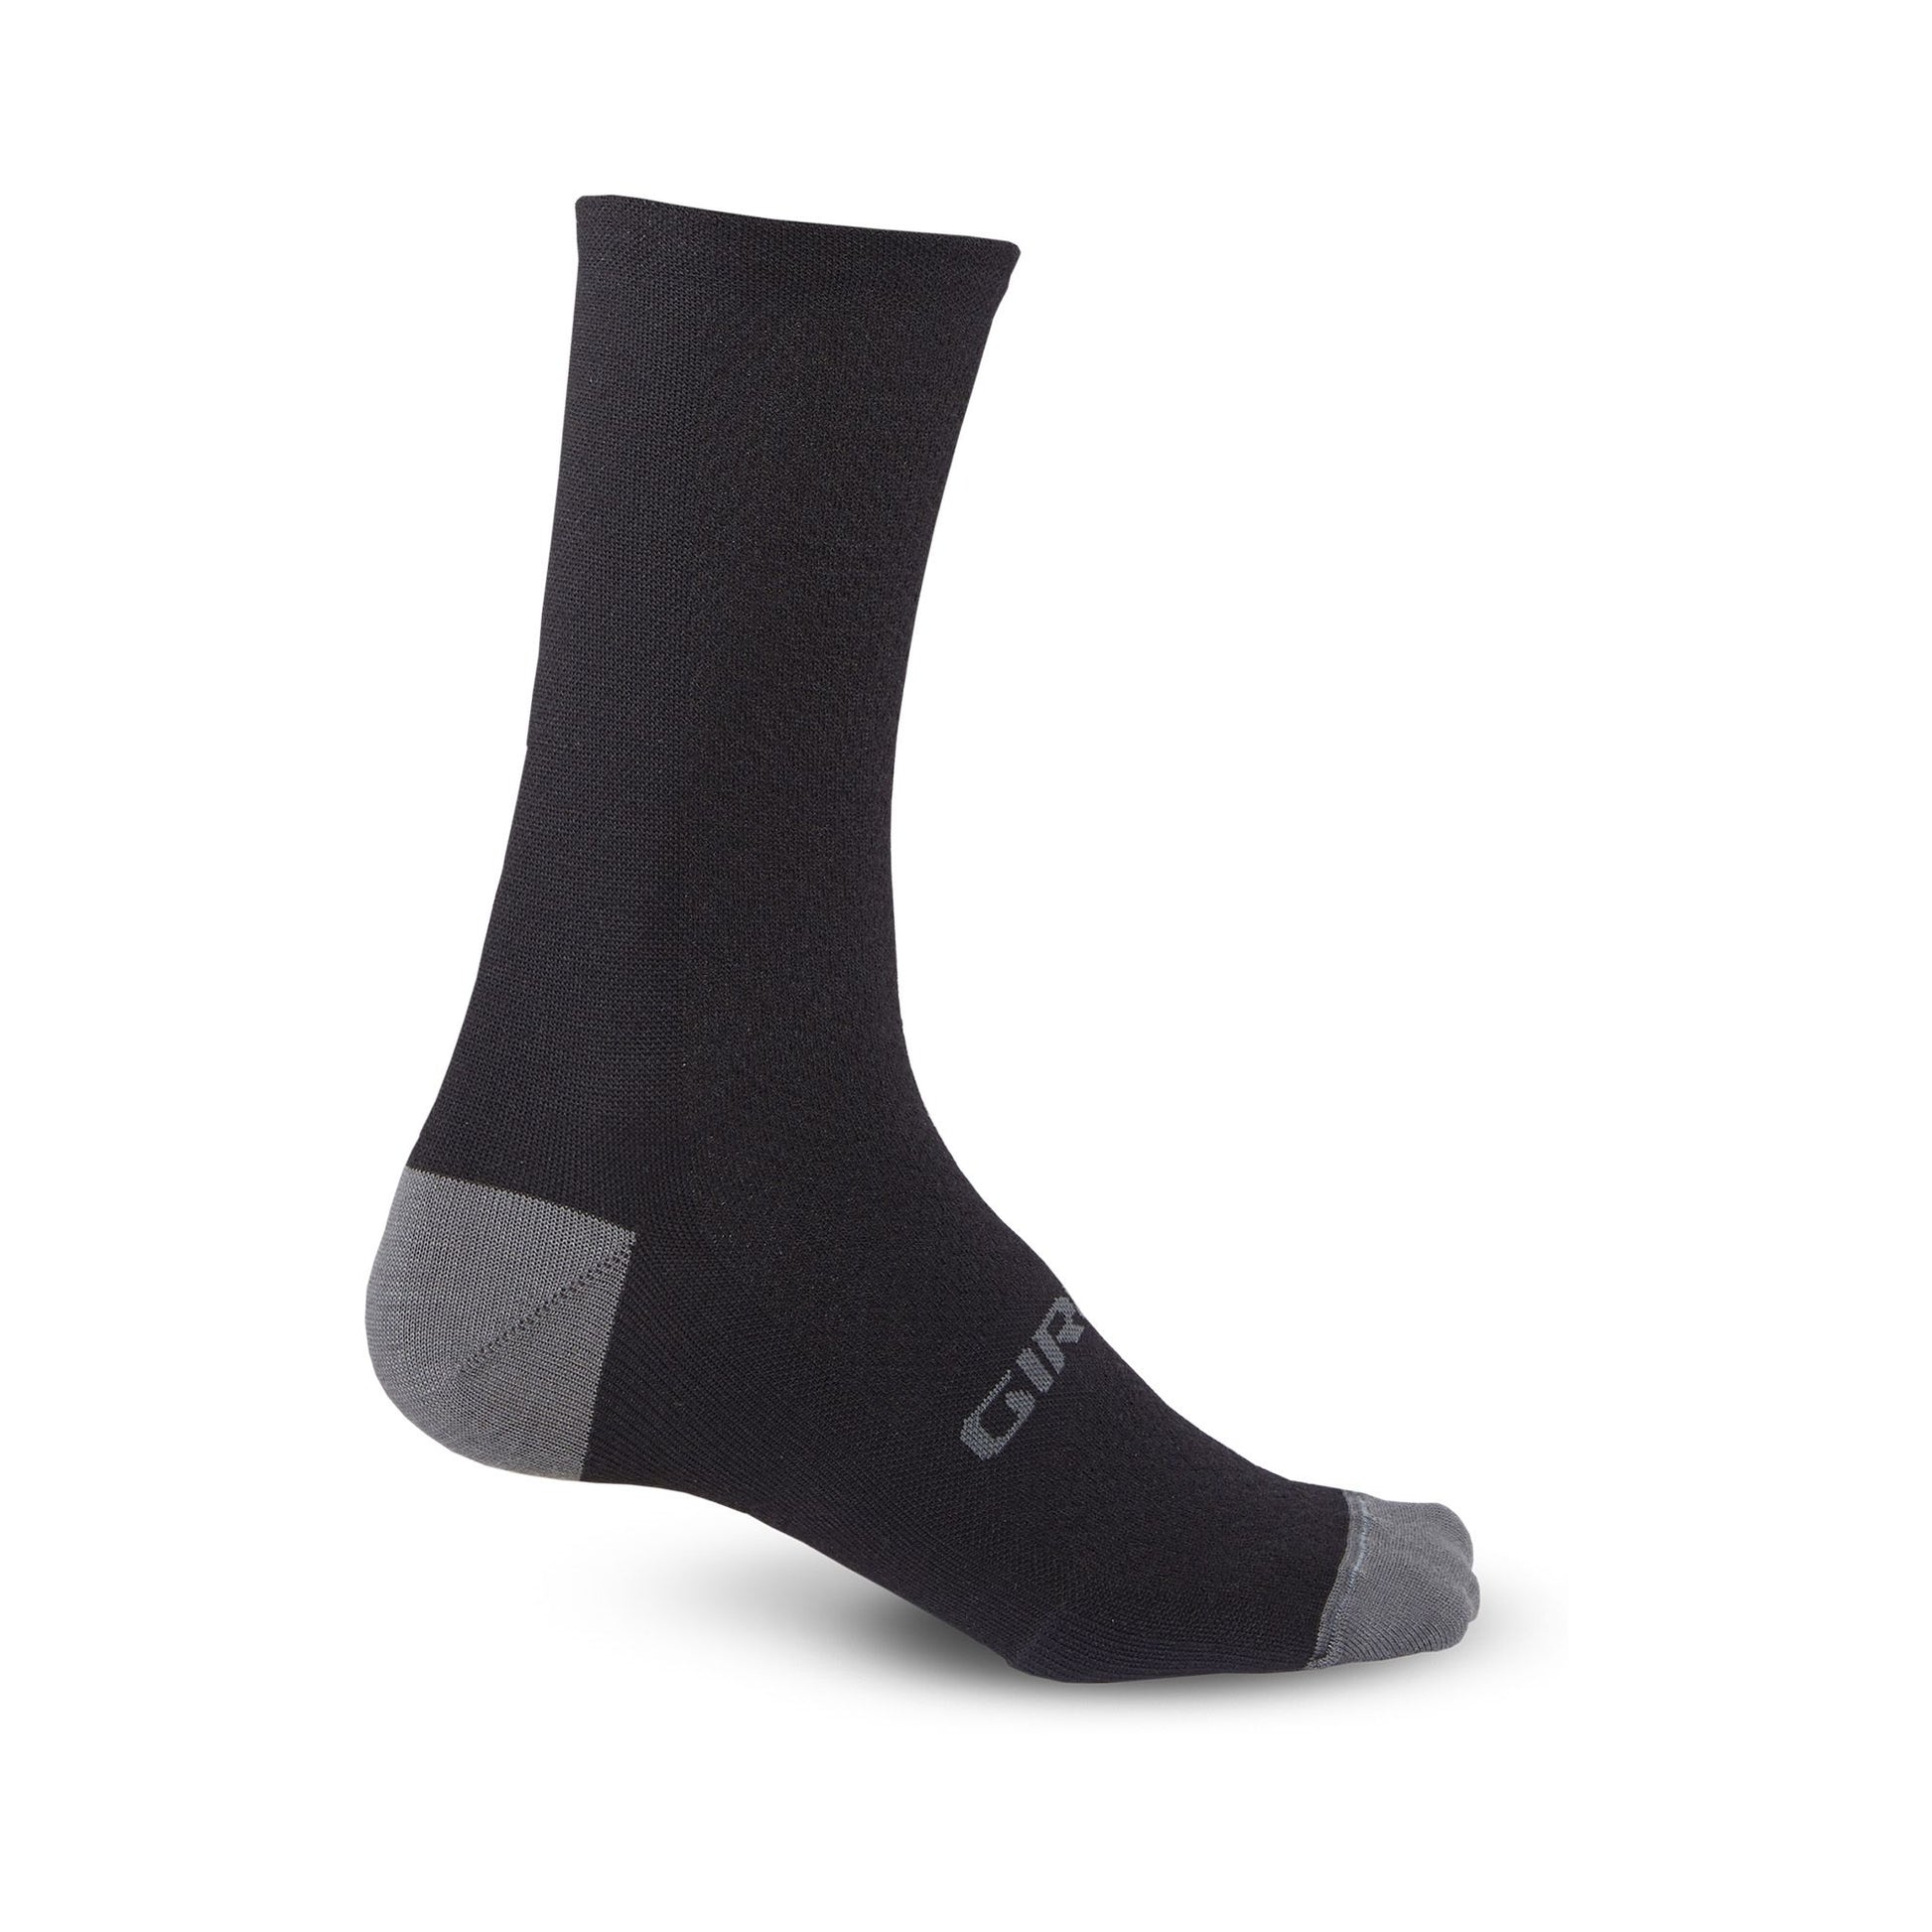 Giro HRc+ Merino Wool Sock Black/Charcoal Bike Socks